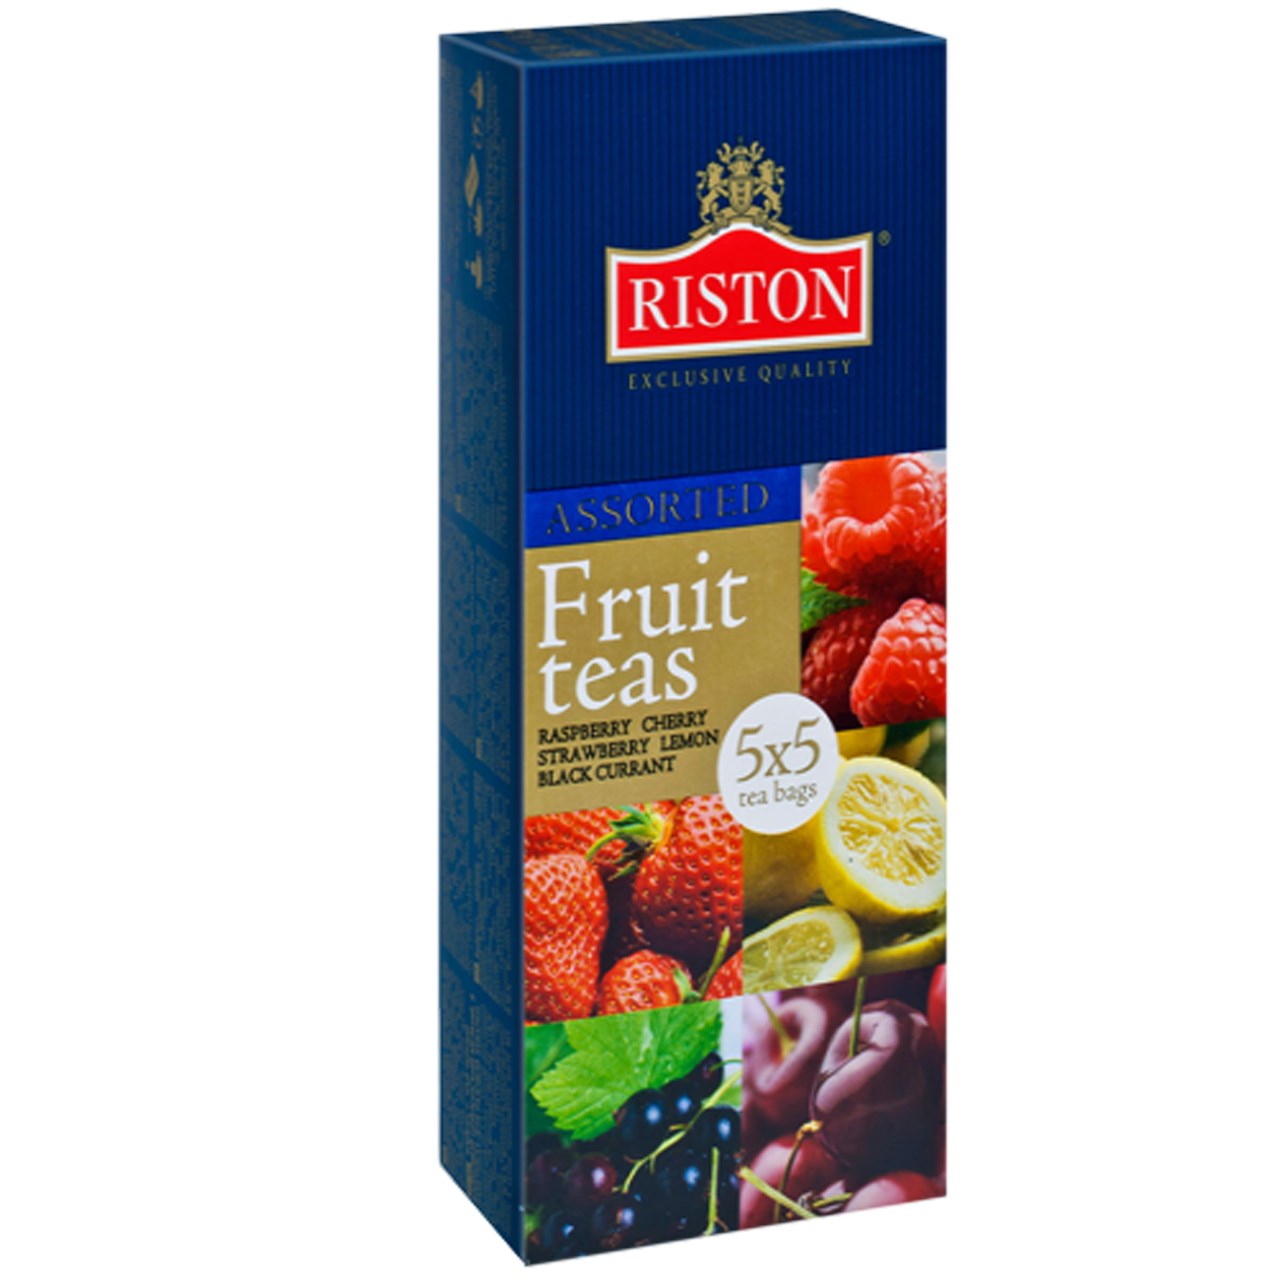 بسته چای کیسه ای ریستون مدل Assorted Fruit